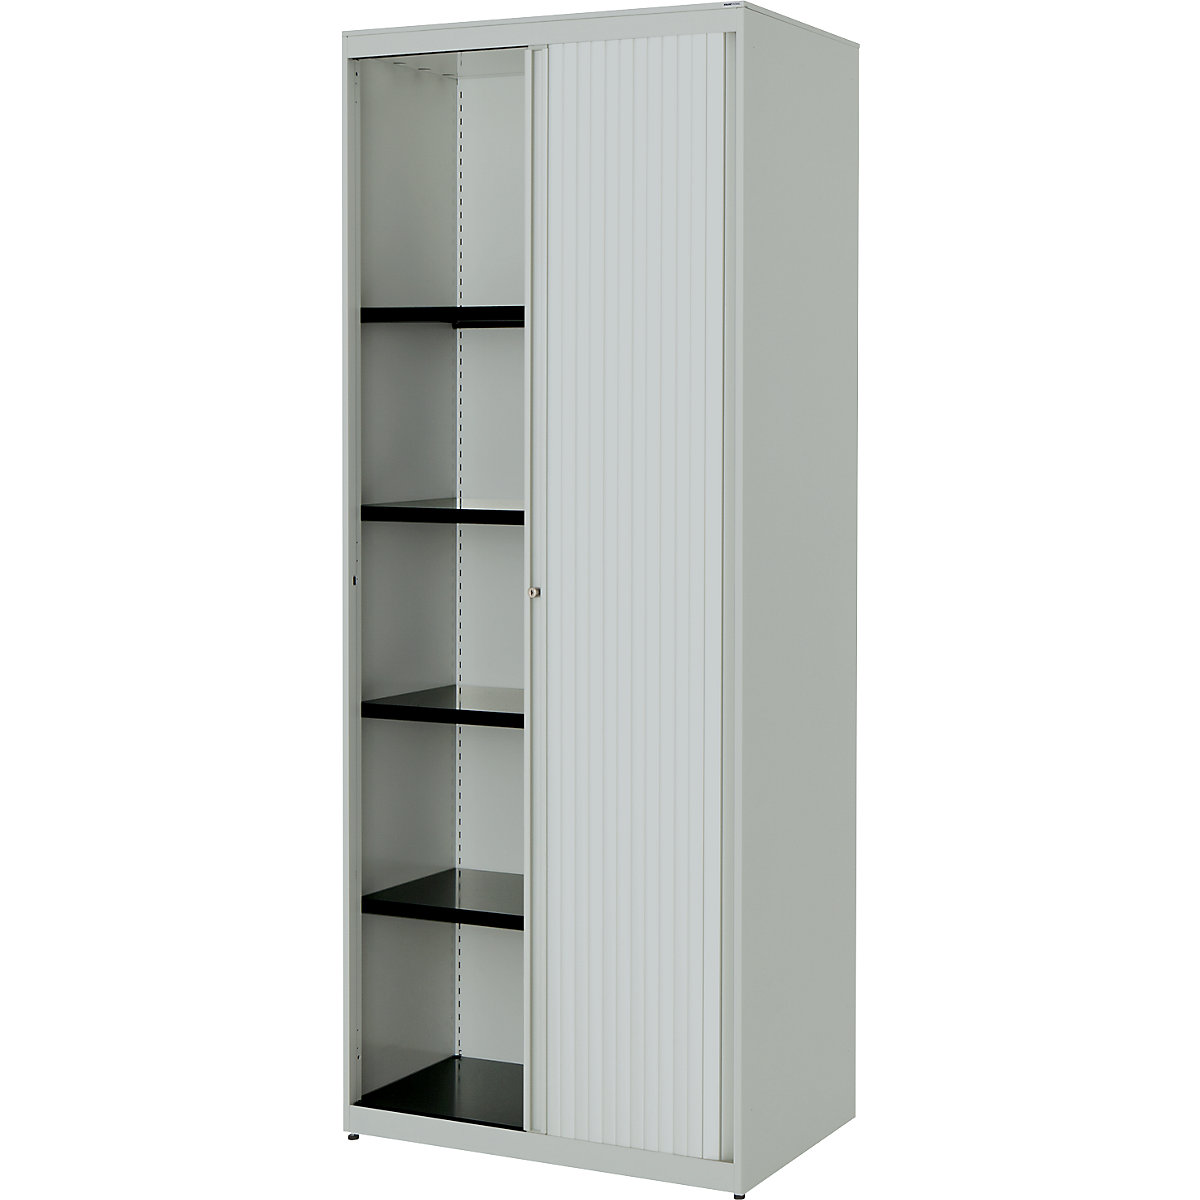 Horizontal roller shutter cupboard – mauser, HxWxD 1956 x 800 x 432 mm, steel plate, 4 shelves, light grey / light grey / light grey-4